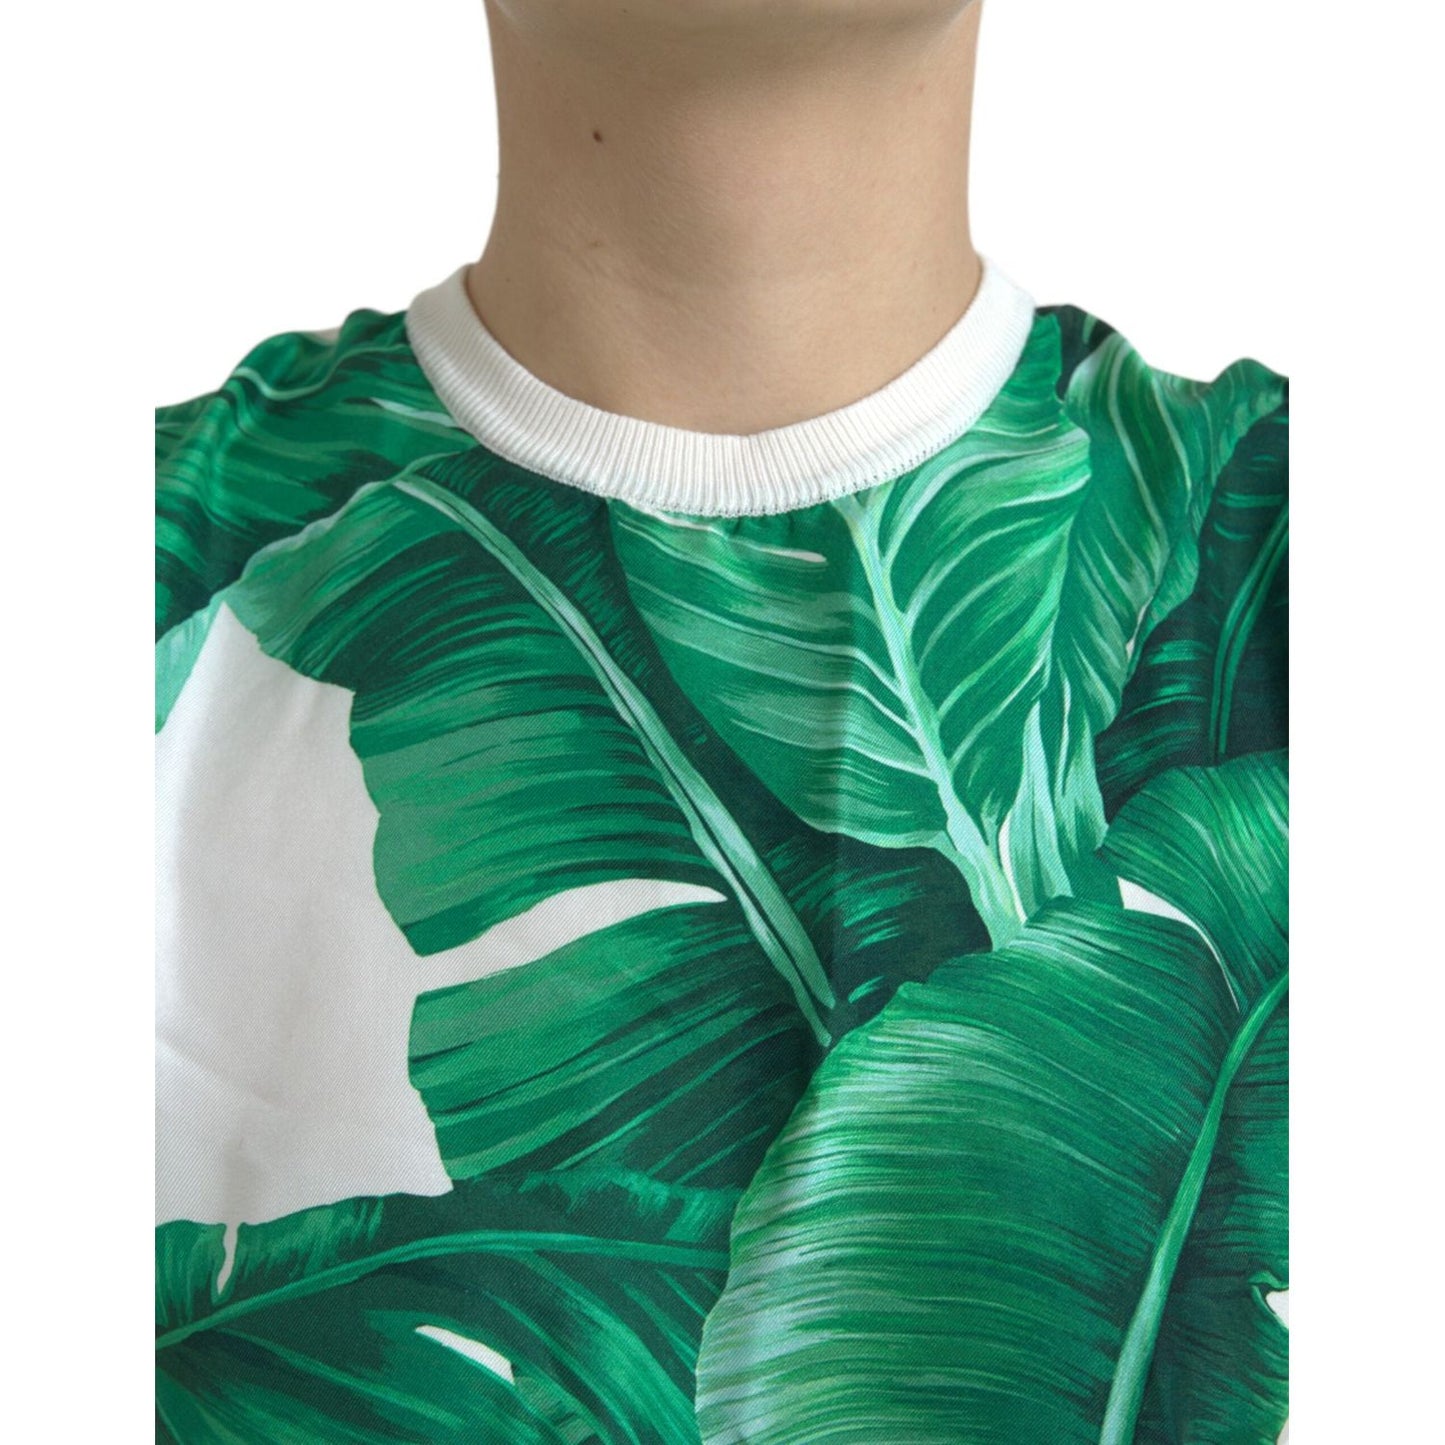 Dolce & Gabbana Silk Banana Leaf Print Tank Top white-banana-leaf-print-crew-neck-tank-top